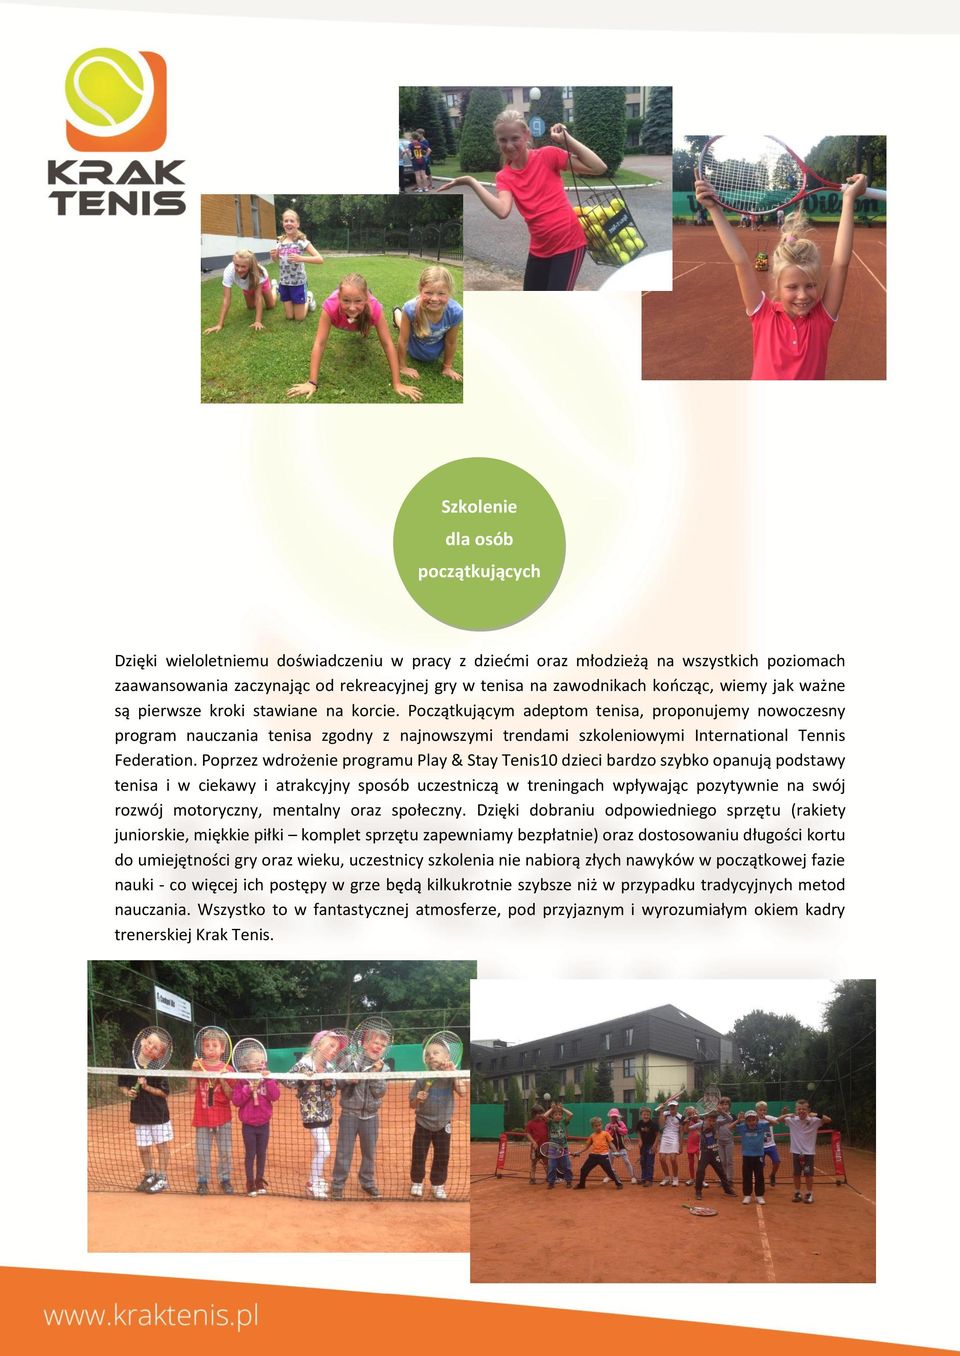 Początkującym adeptom tenisa, proponujemy nowoczesny program nauczania tenisa zgodny z najnowszymi trendami szkoleniowymi International Tennis Federation.